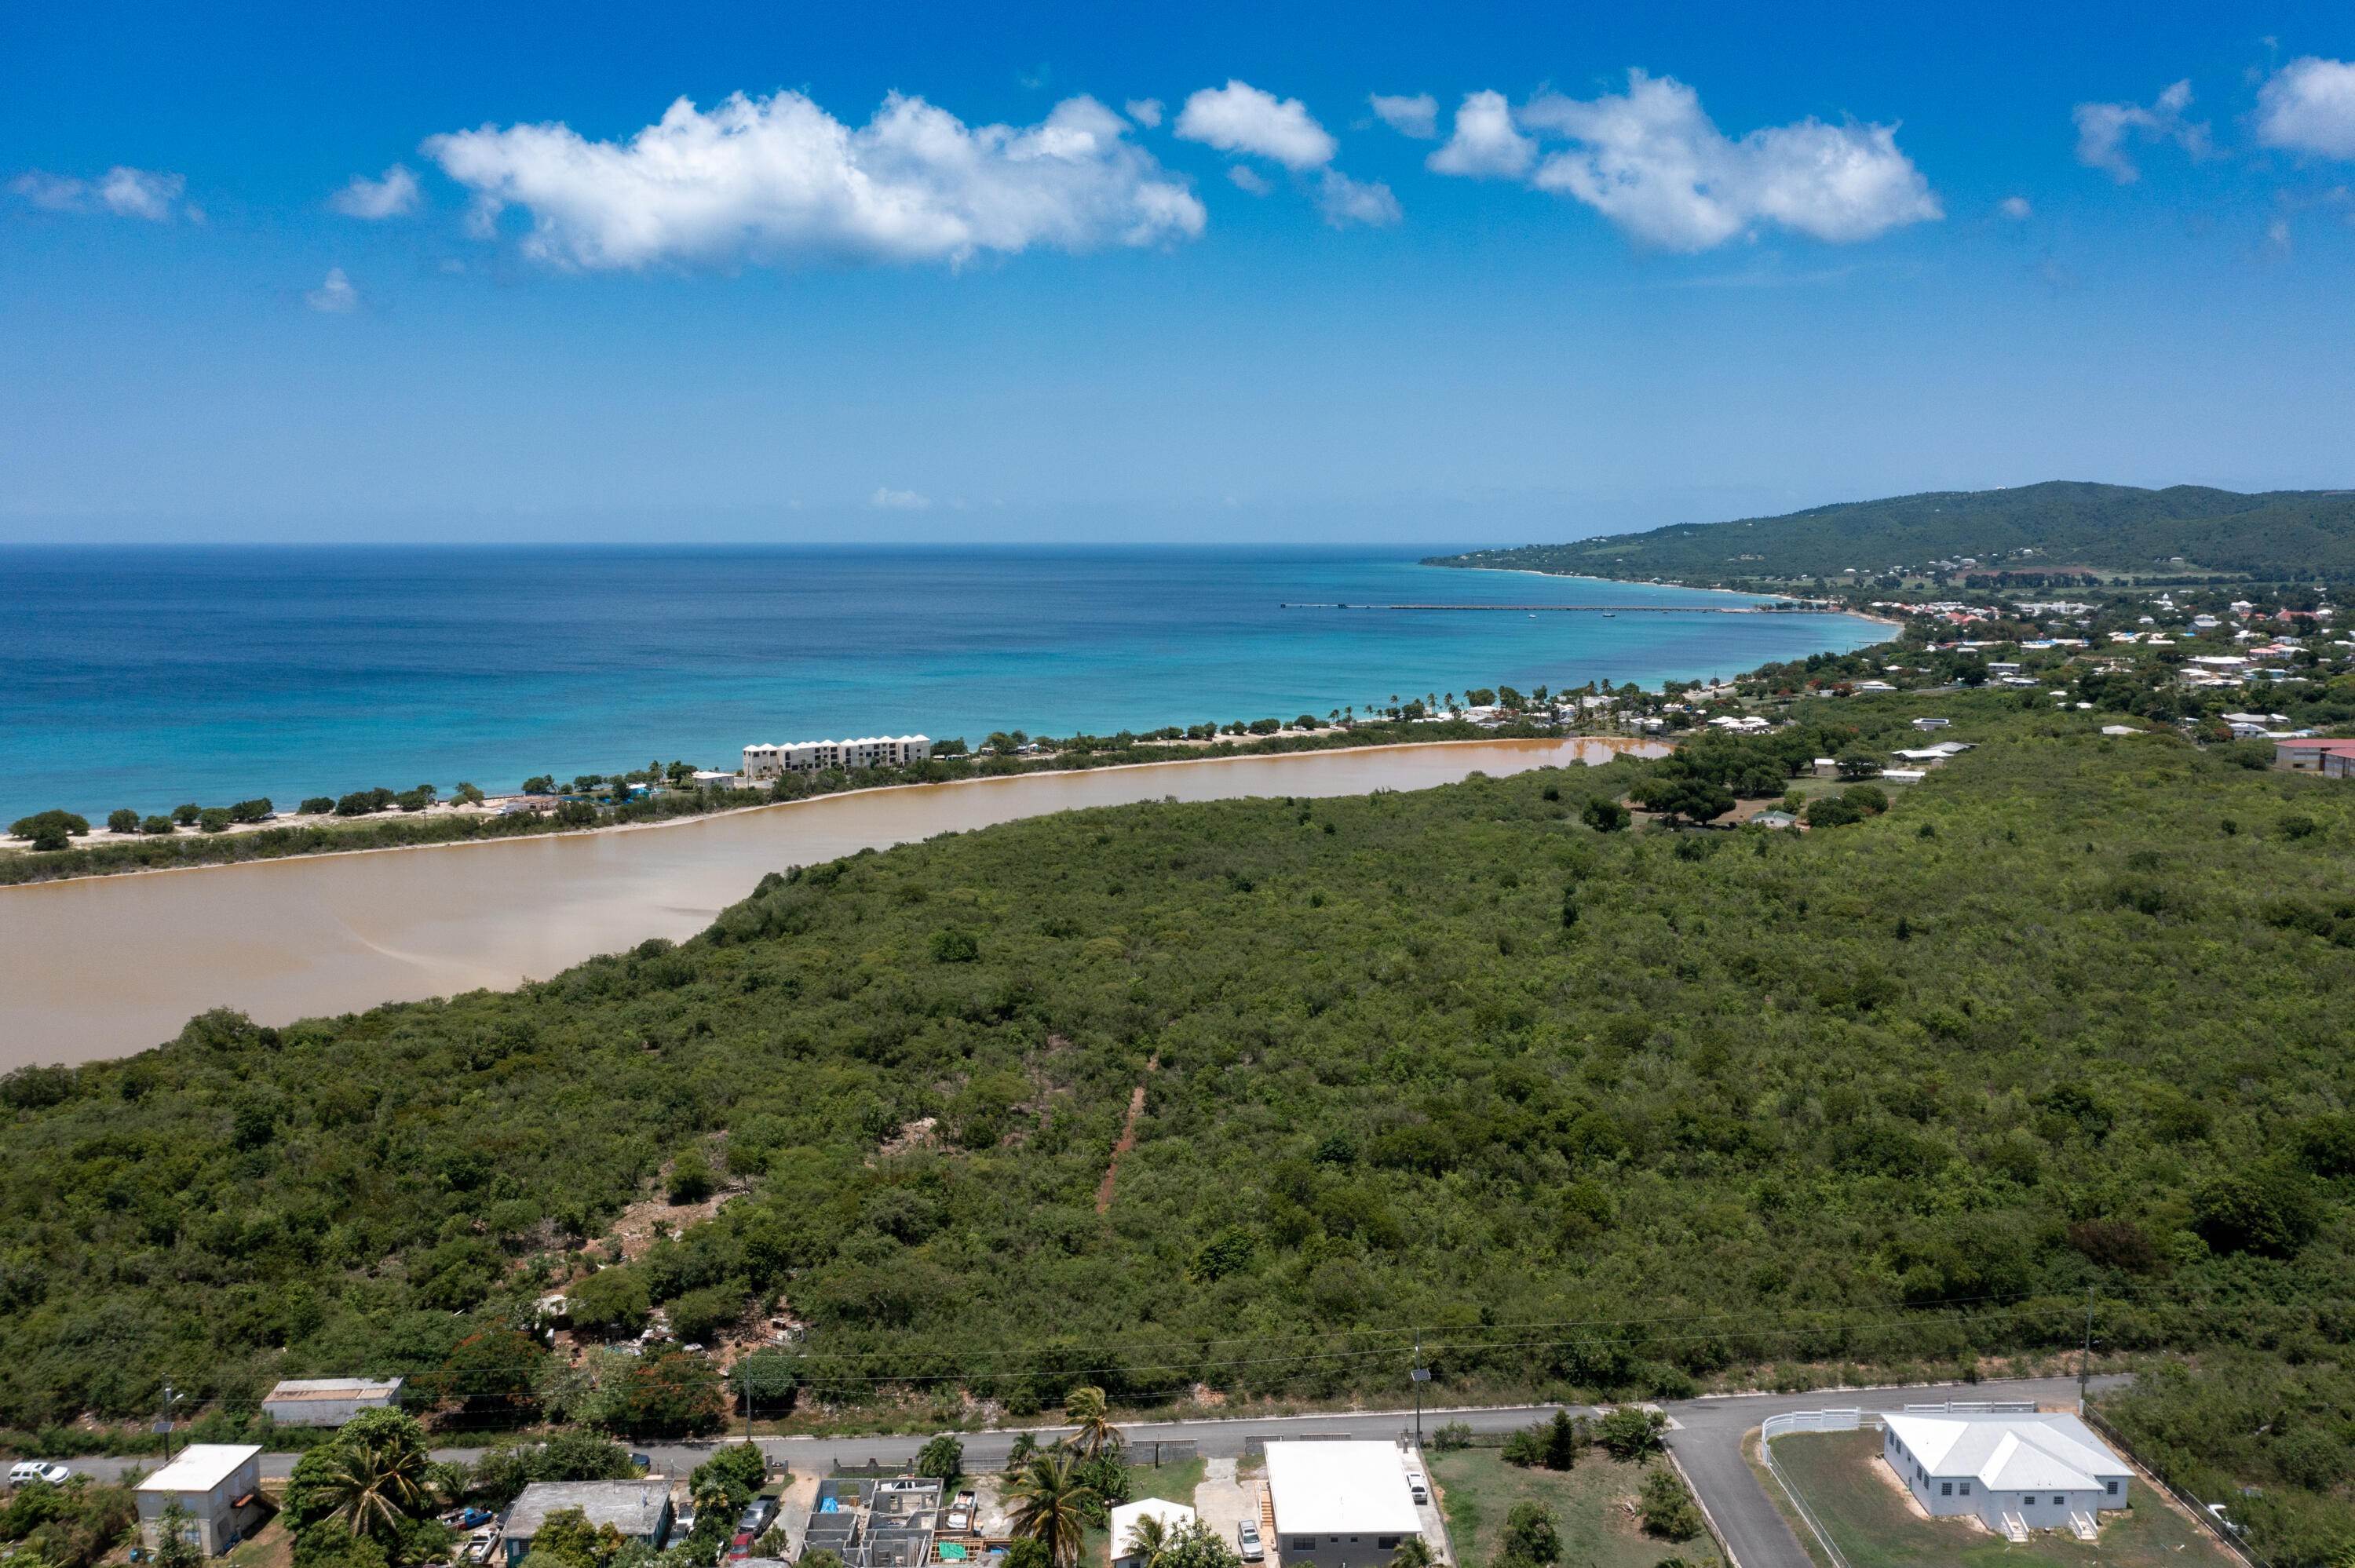 Land for Sale at 211 Hessenlberg WE St Croix, Virgin Islands 00840 United States Virgin Islands